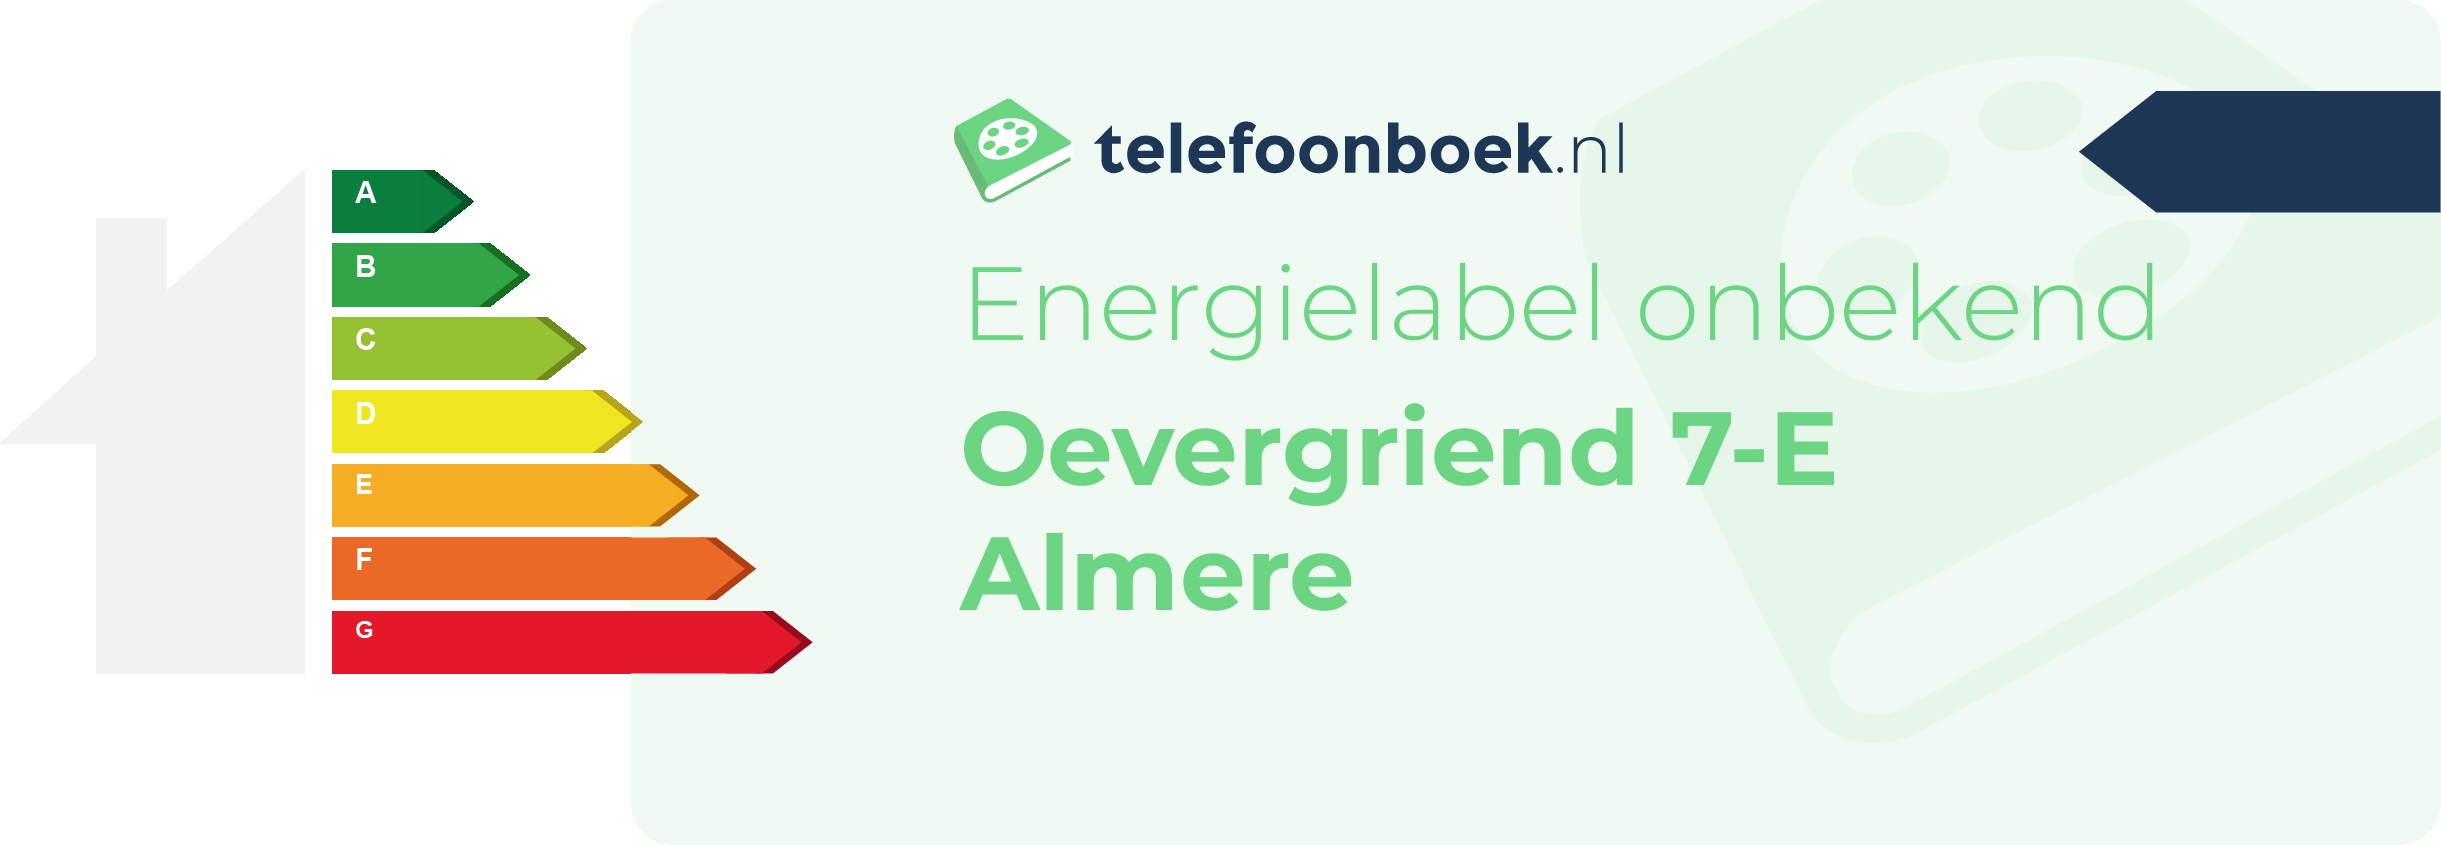 Energielabel Oevergriend 7-E Almere